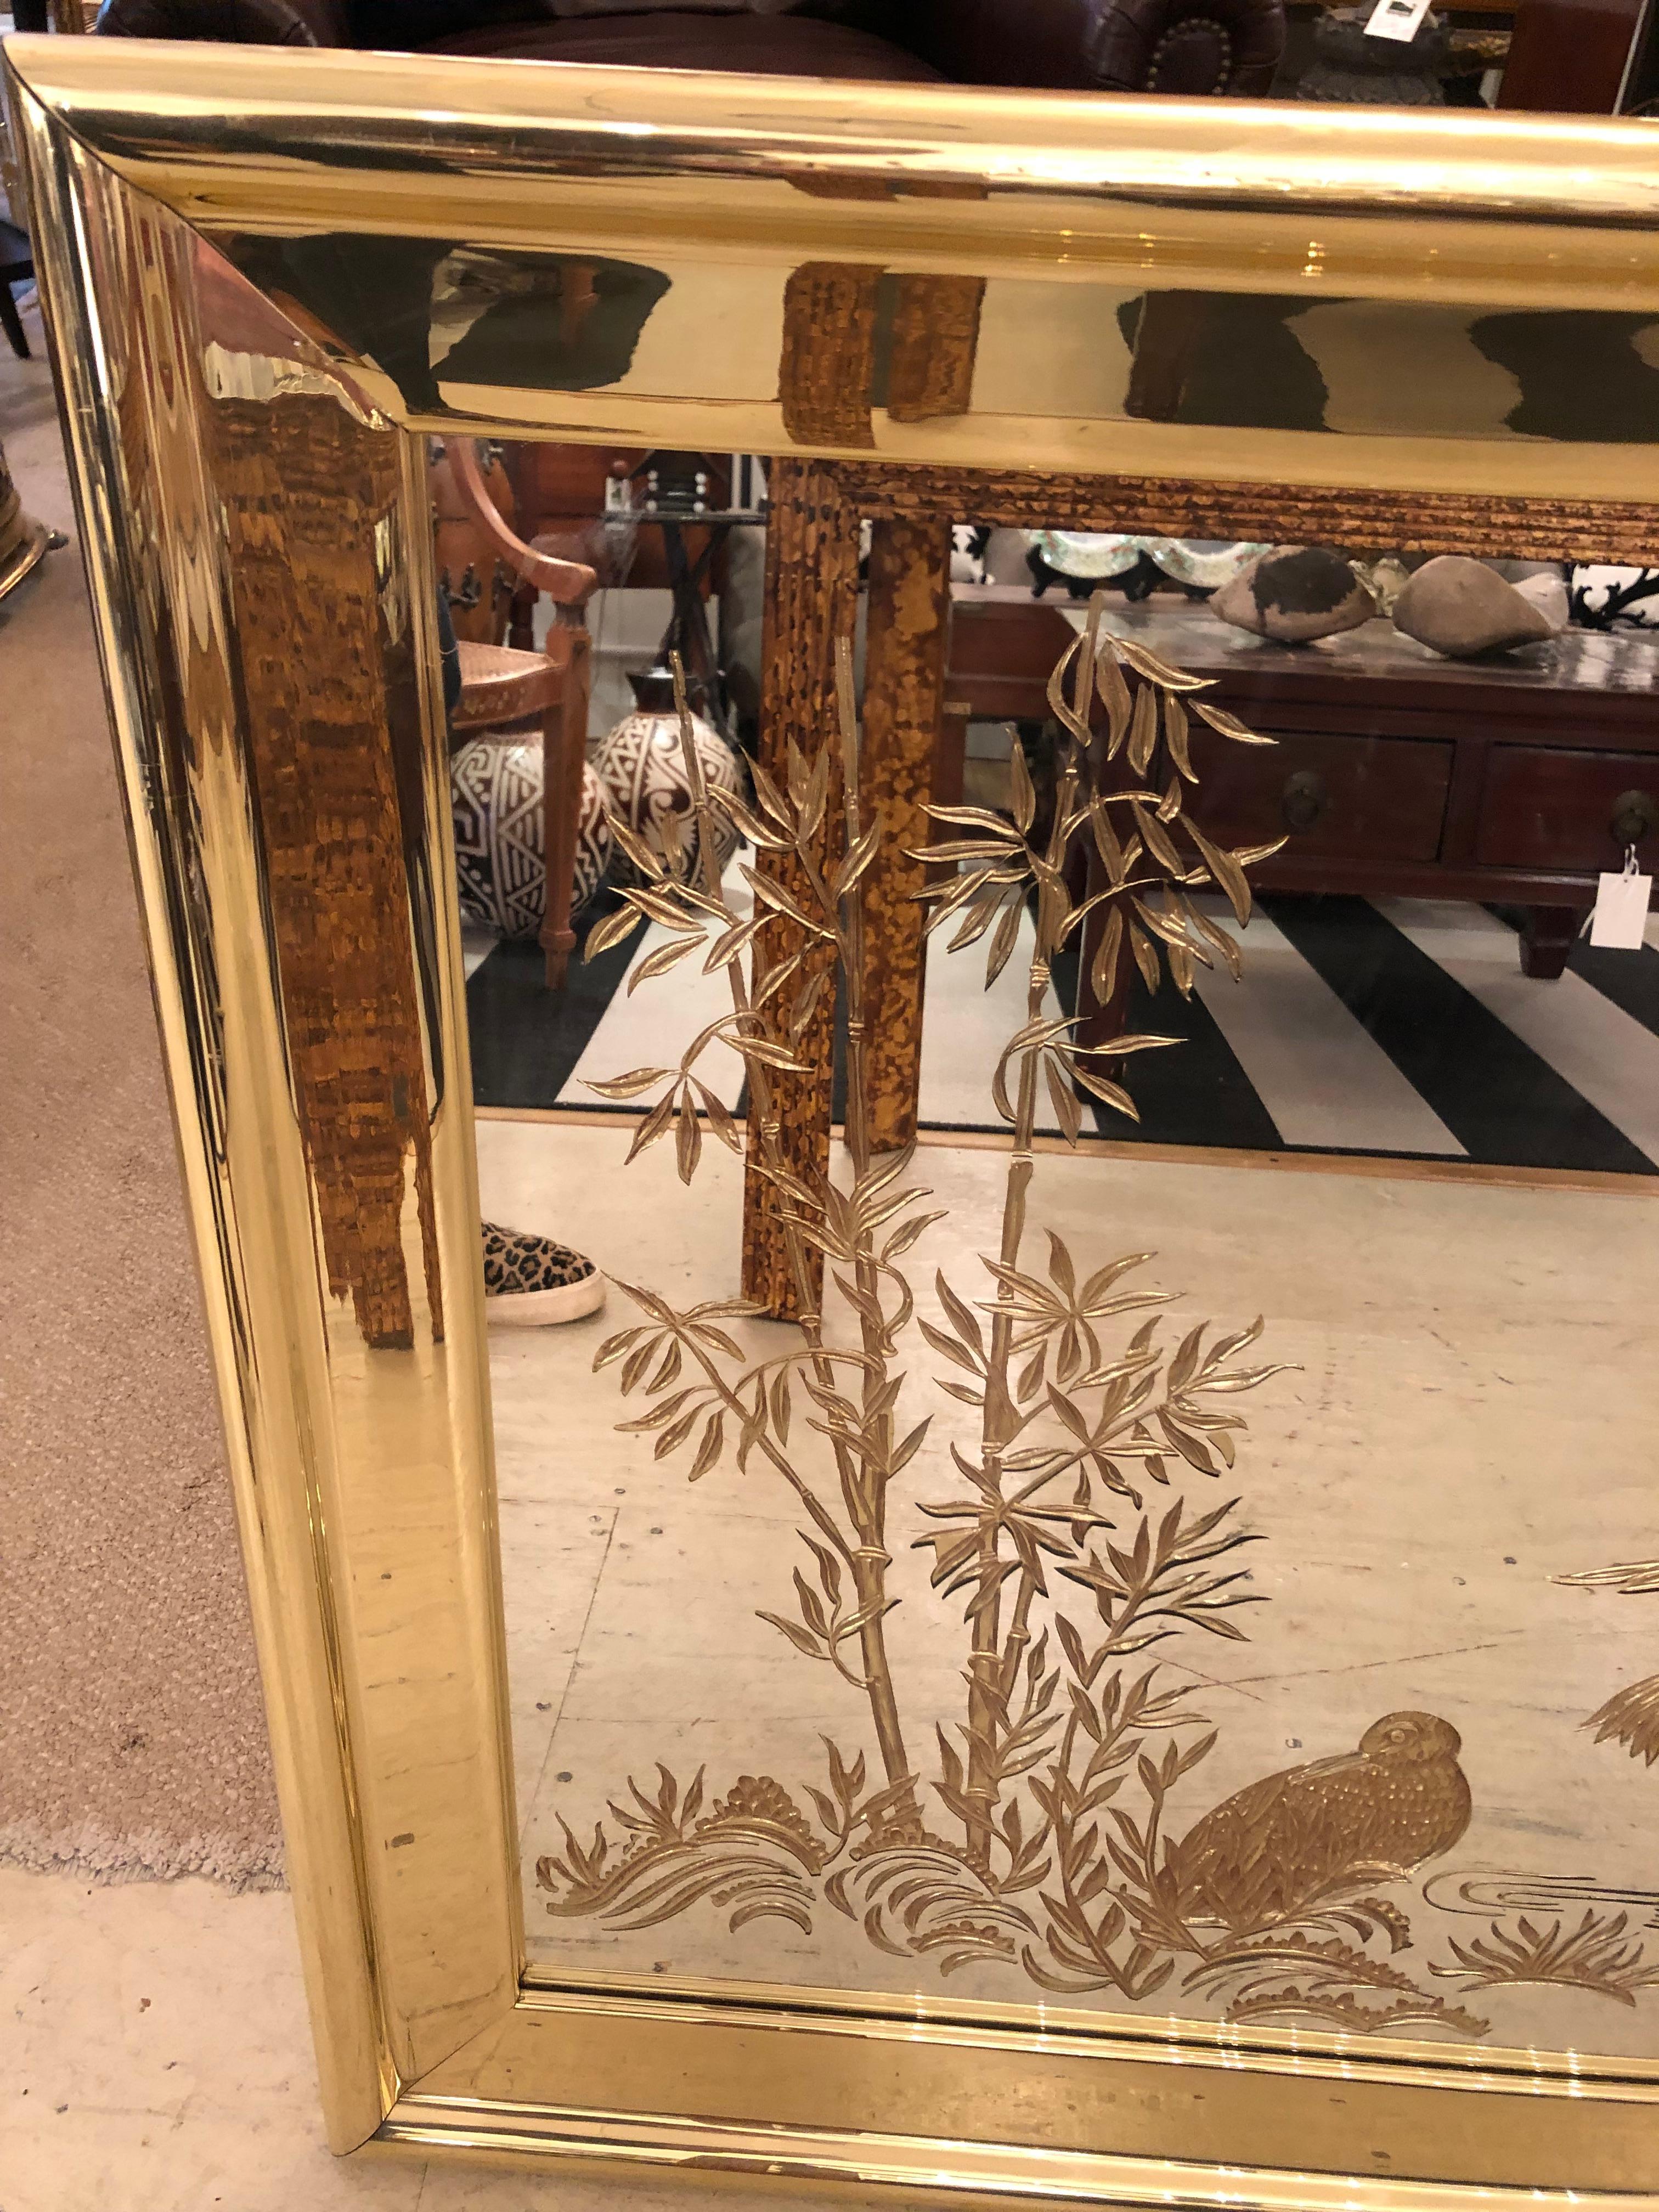 Un grand miroir rectangulaire glamour gravé à l'eau-forte avec une décoration inversée en or églomisé de grues et de paysages d'inspiration asiatique.  Un gros cadre en laiton ajoute une touche épicée.